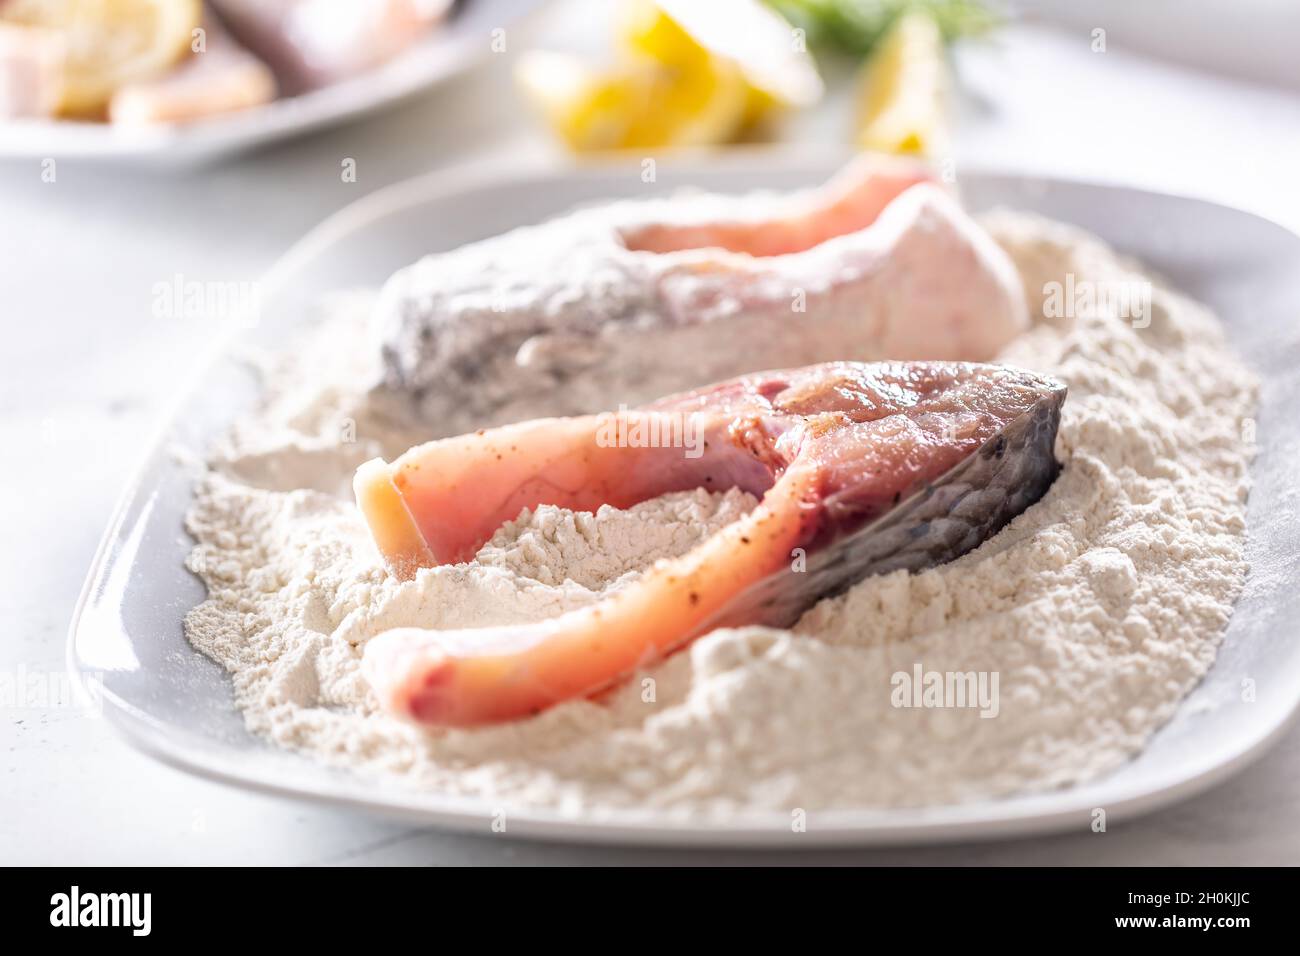 Zubereitung von frischem Fisch vor dem Braten durch Einwickeln in Mehl  Stockfotografie - Alamy